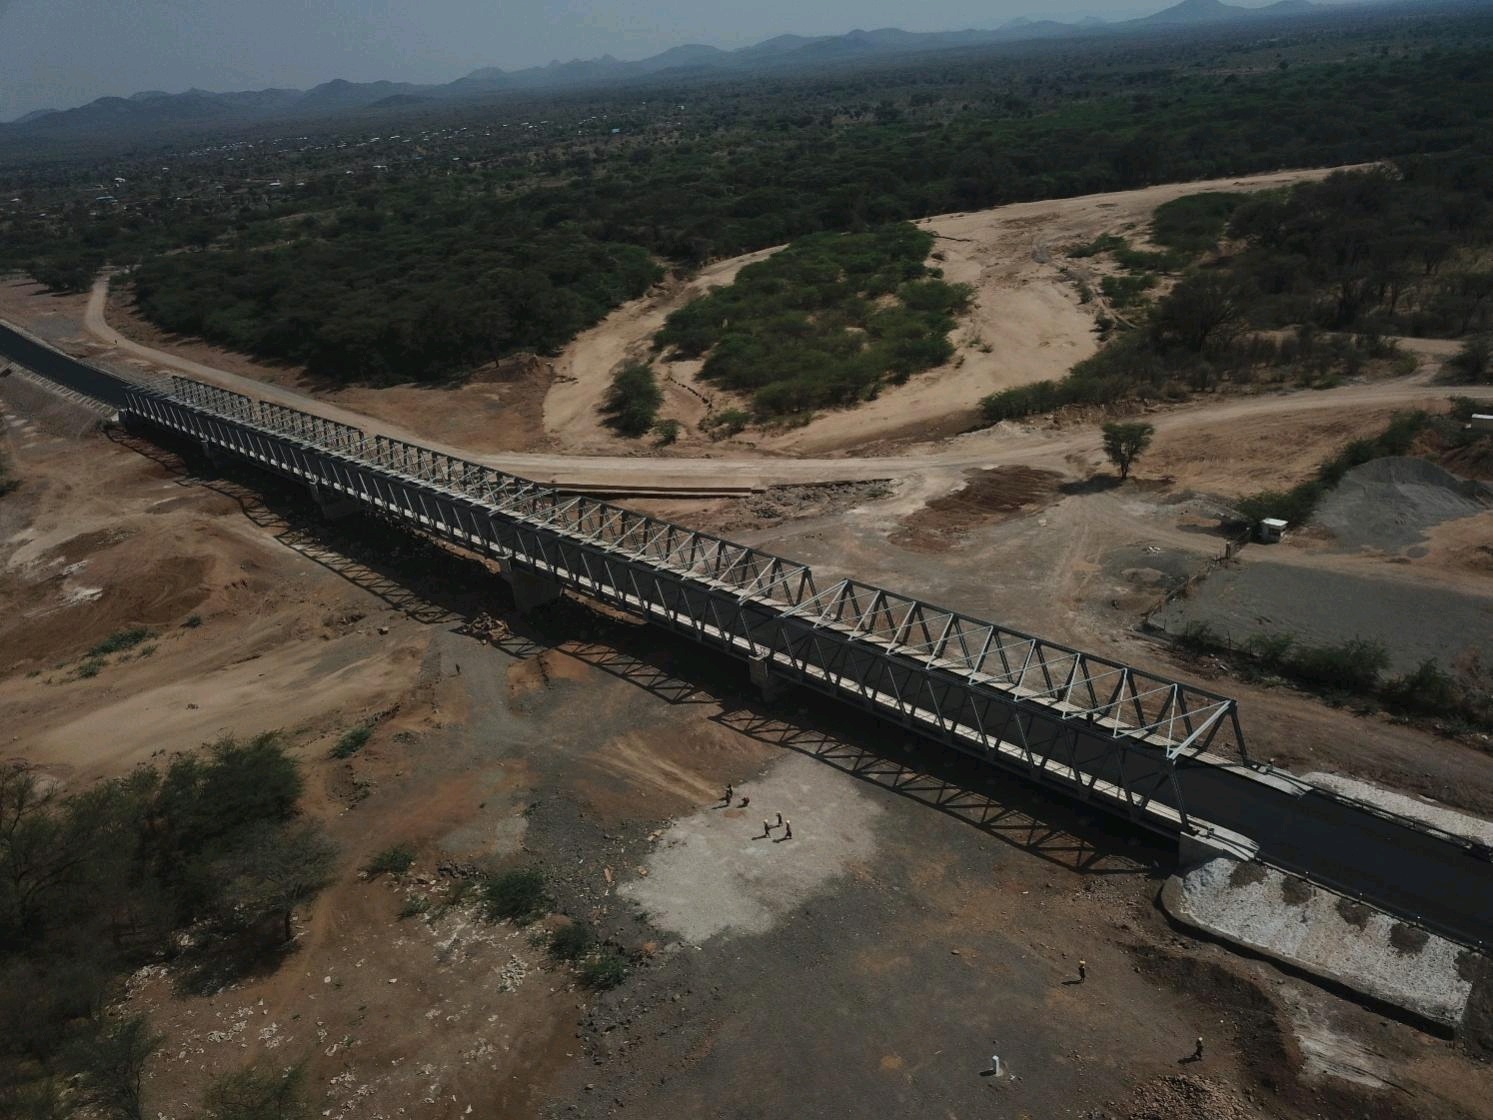 项目建成的10号桁架桥成为肯尼亚最长桁架桥.png